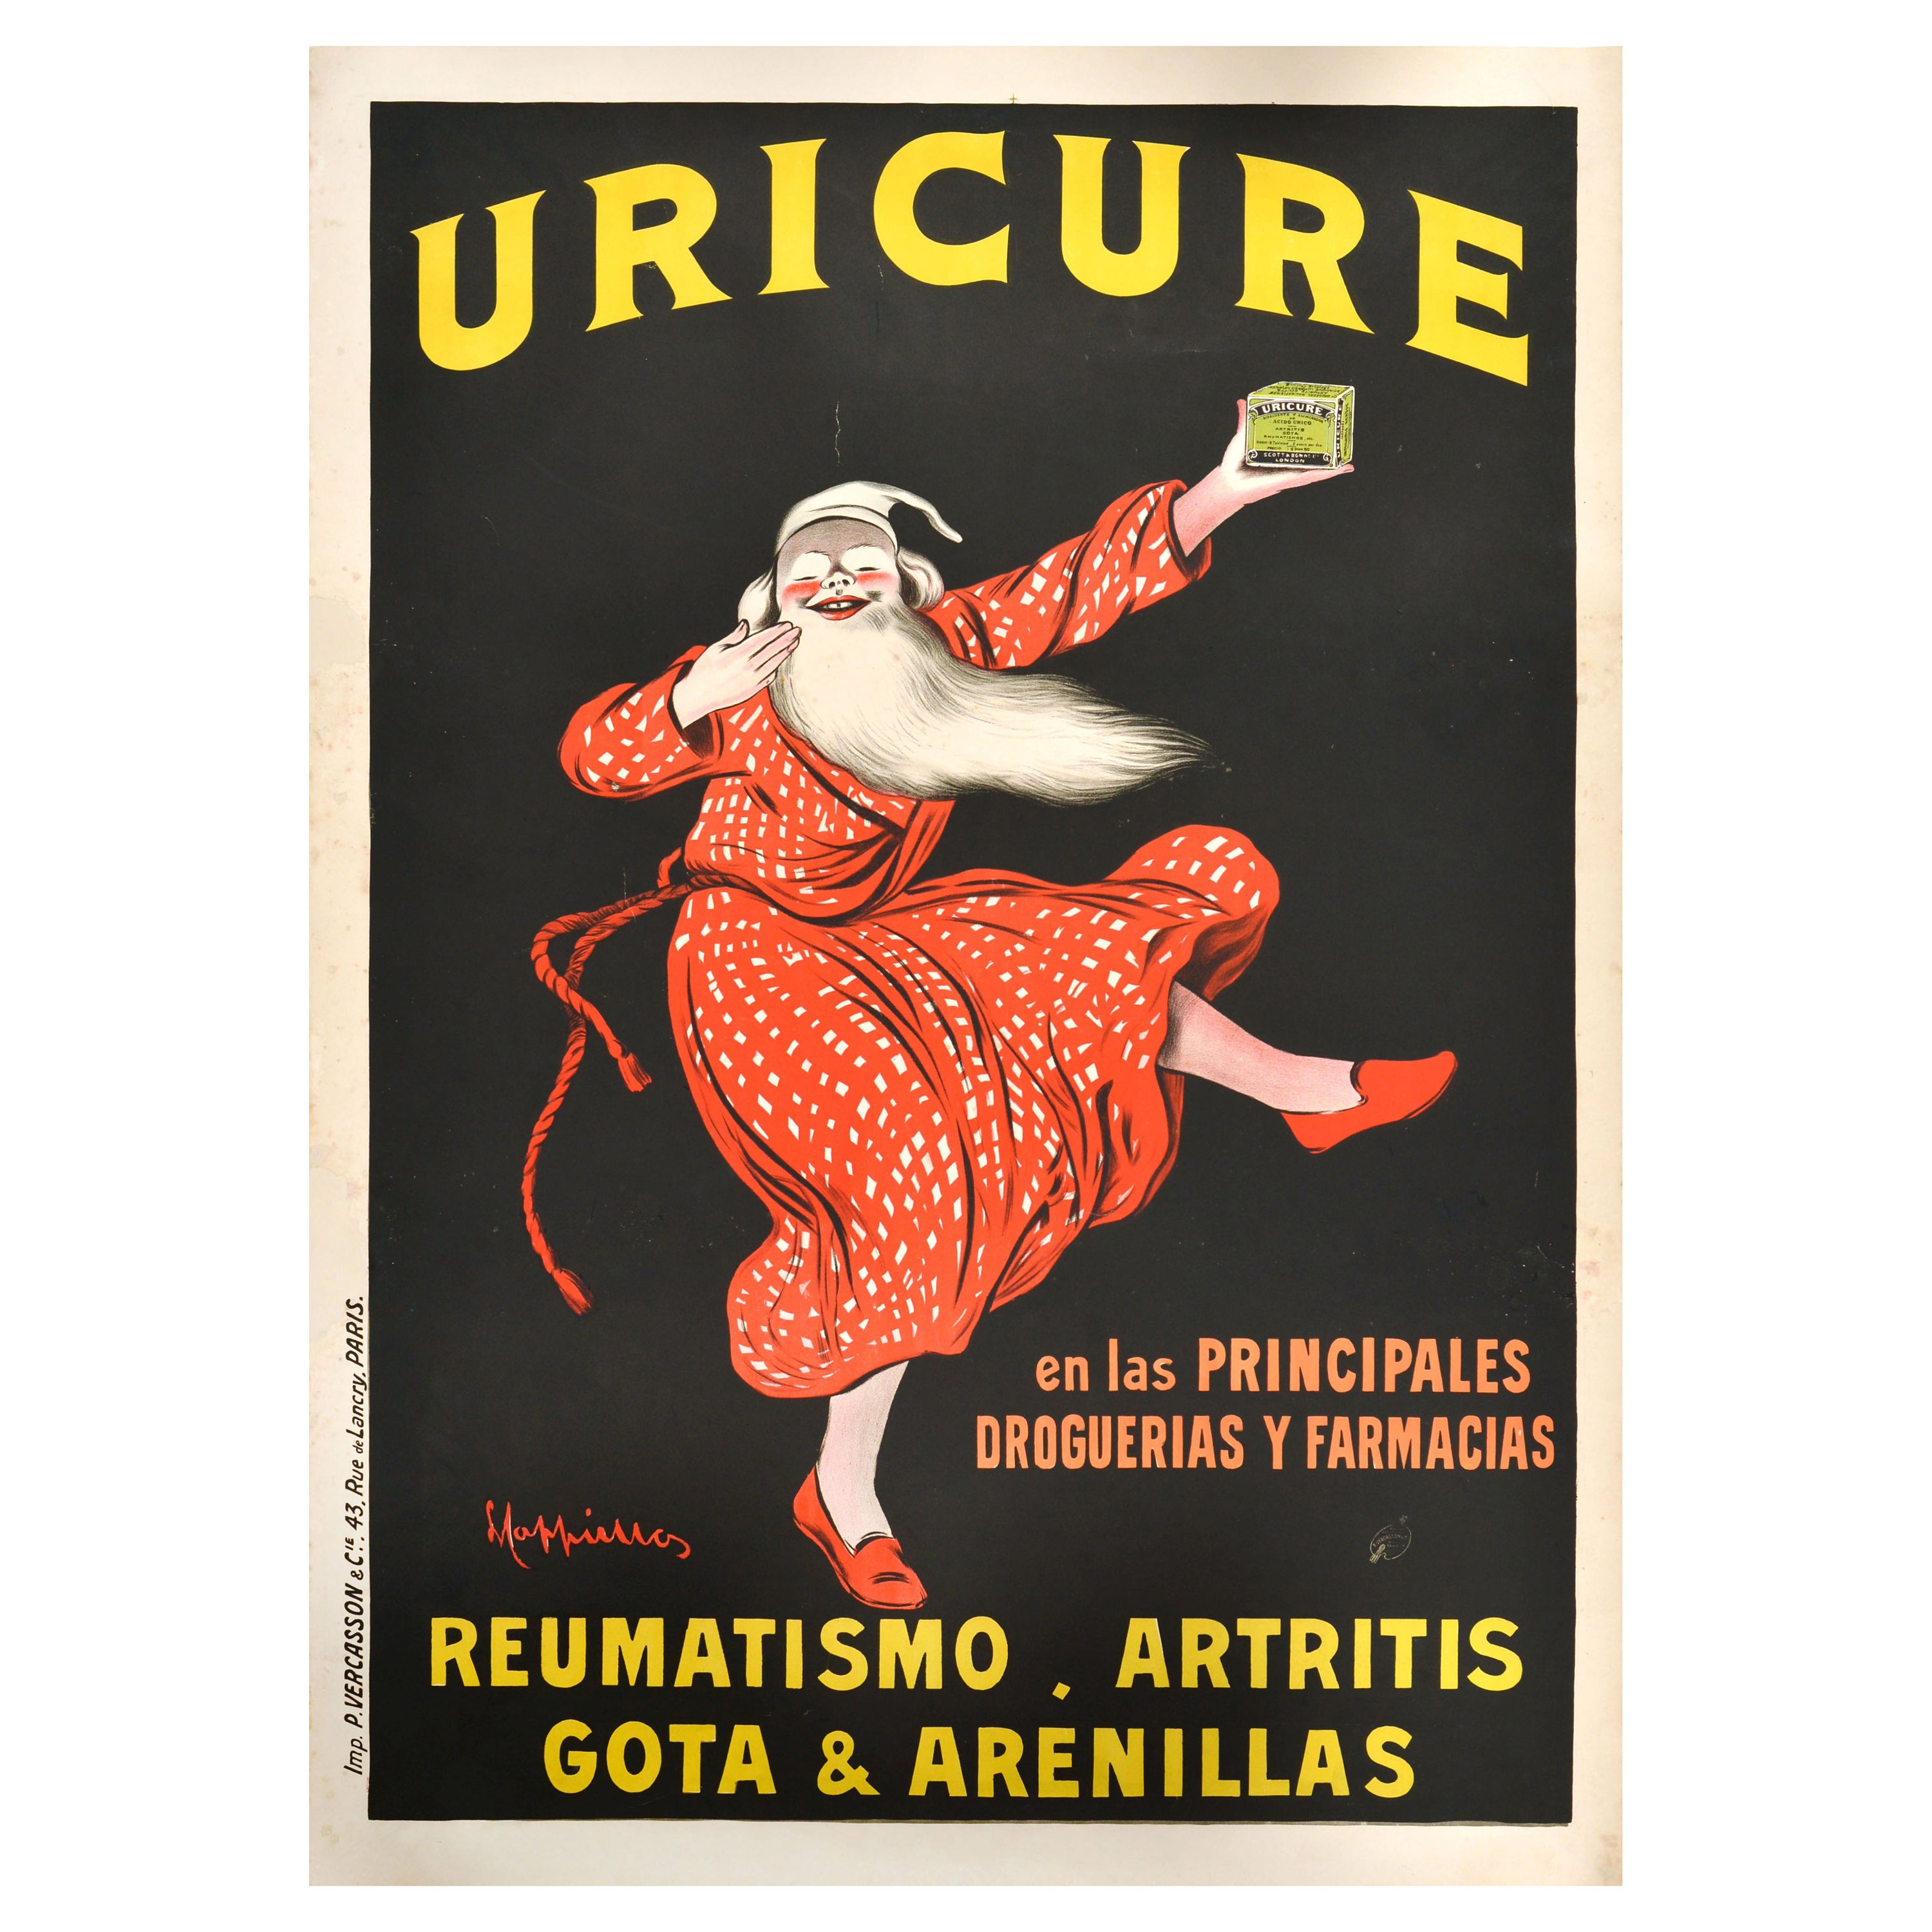 Original Antikes Werbeplakat Uricure Medicine, Leonetto Cappiello, Design